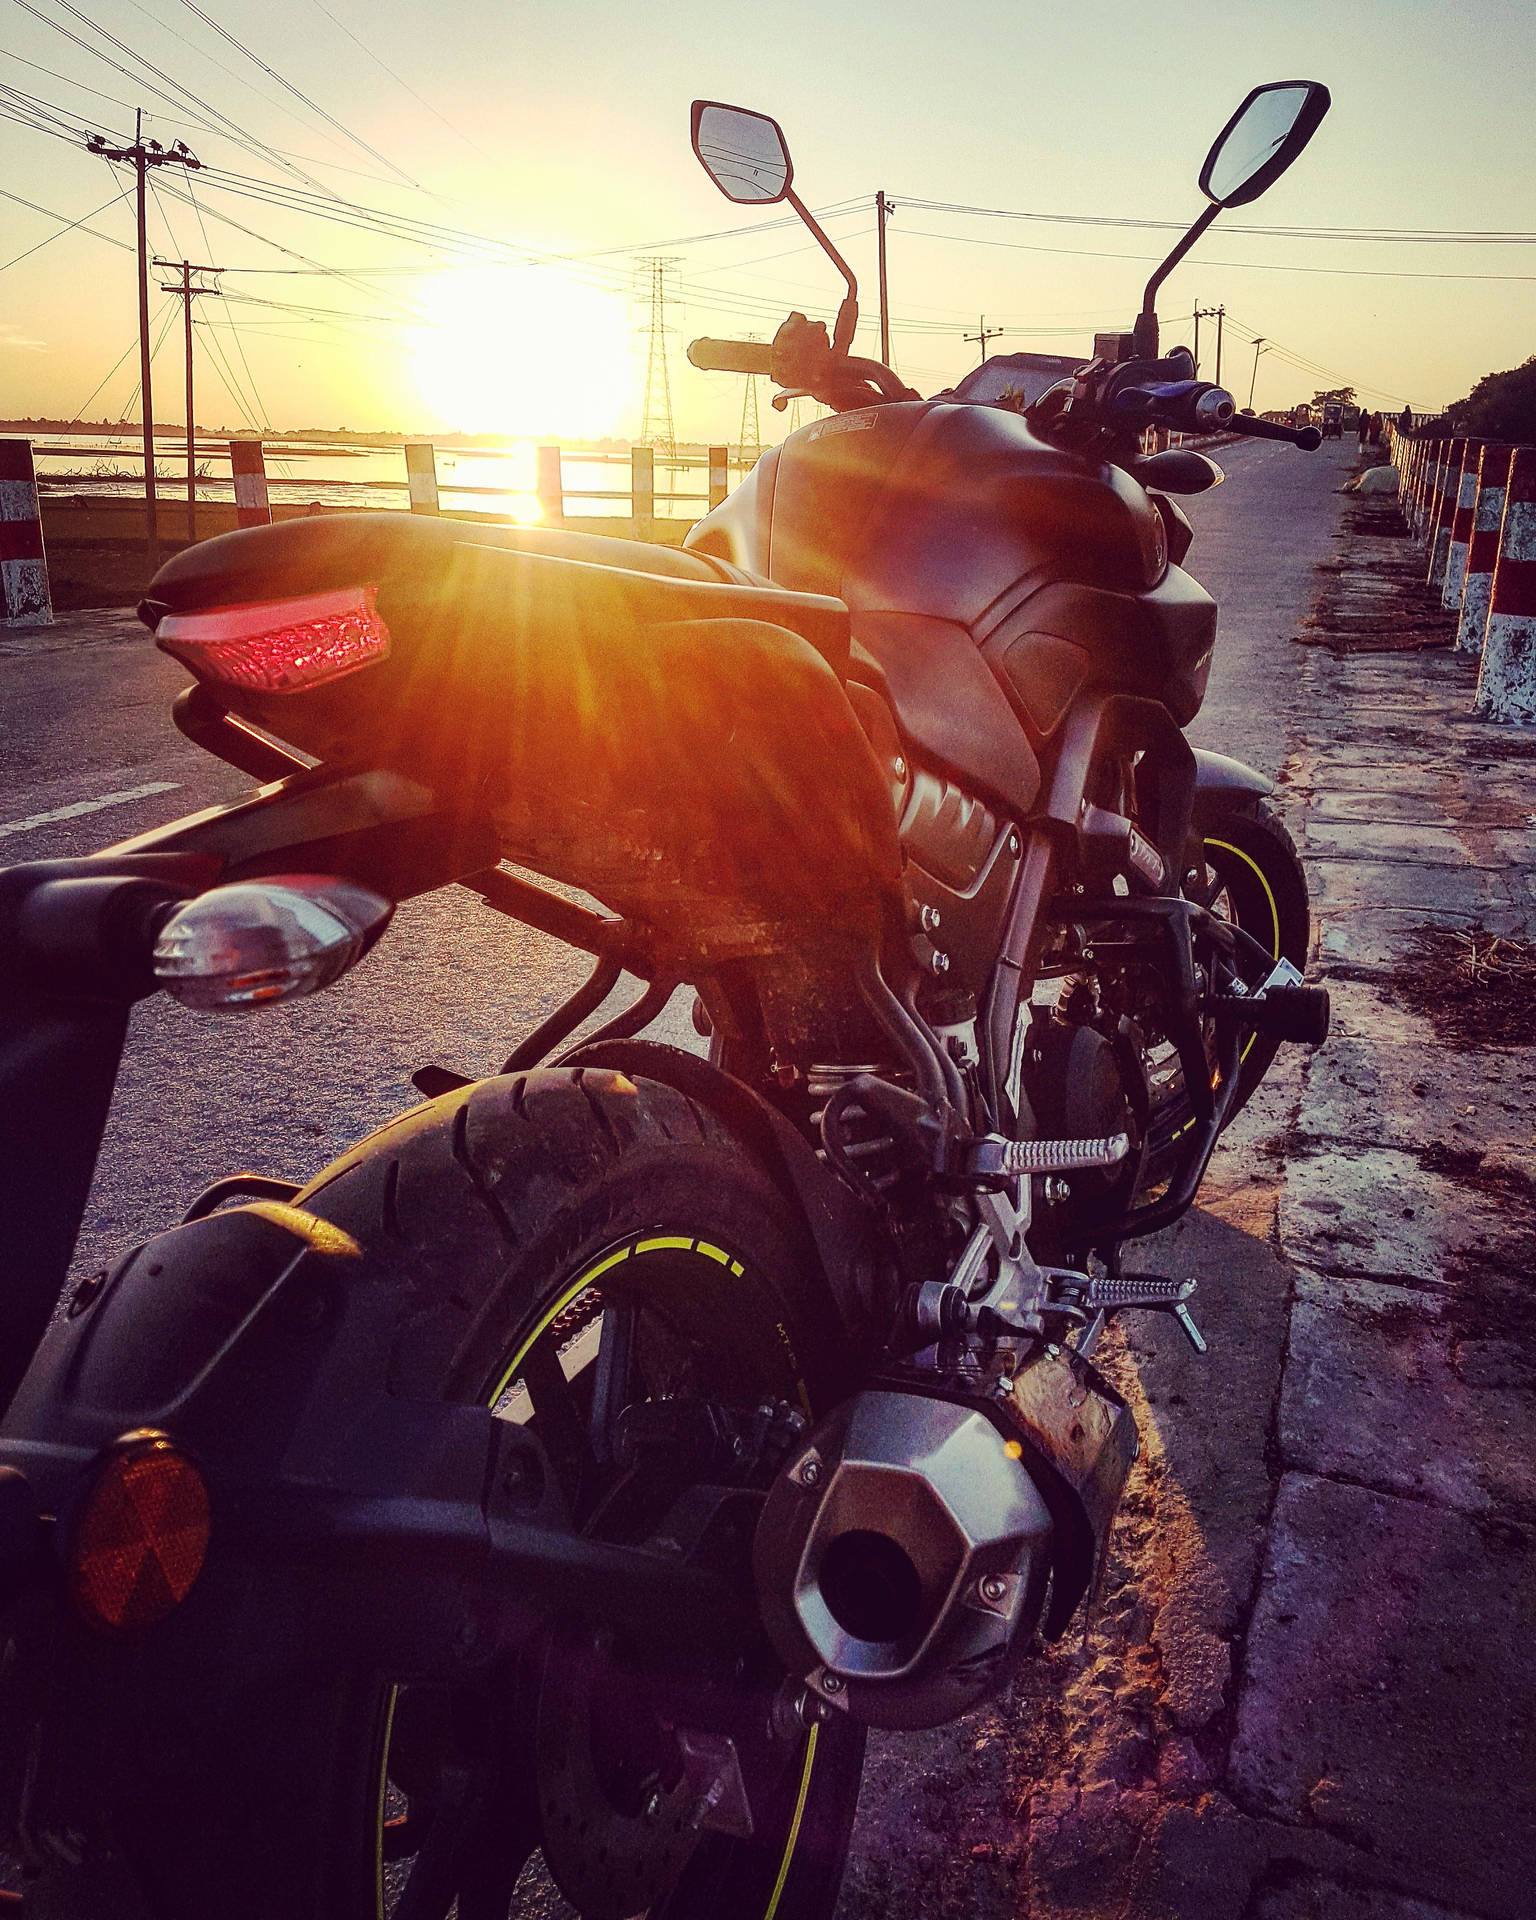 Black Yamaha Mt 15 Over Sunset Background